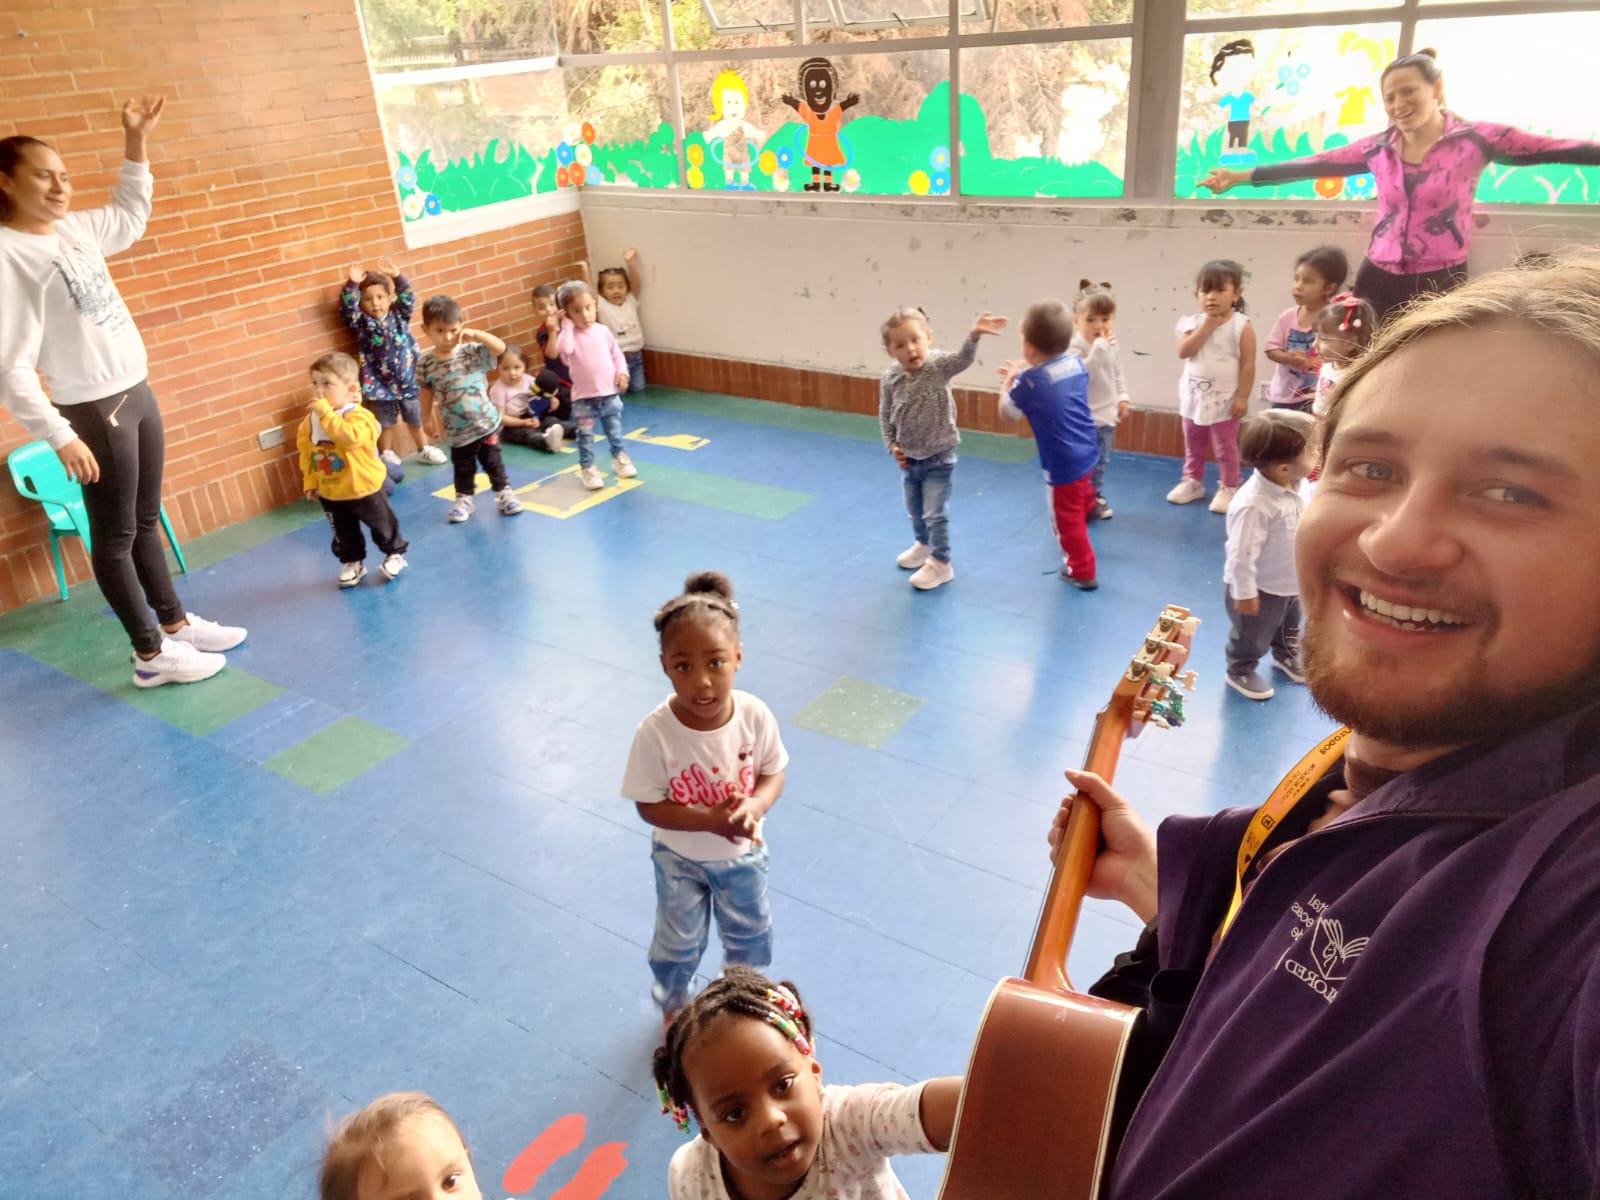 niños y niñas jugando en medio de una clase mientras su profesor toca la guitarra